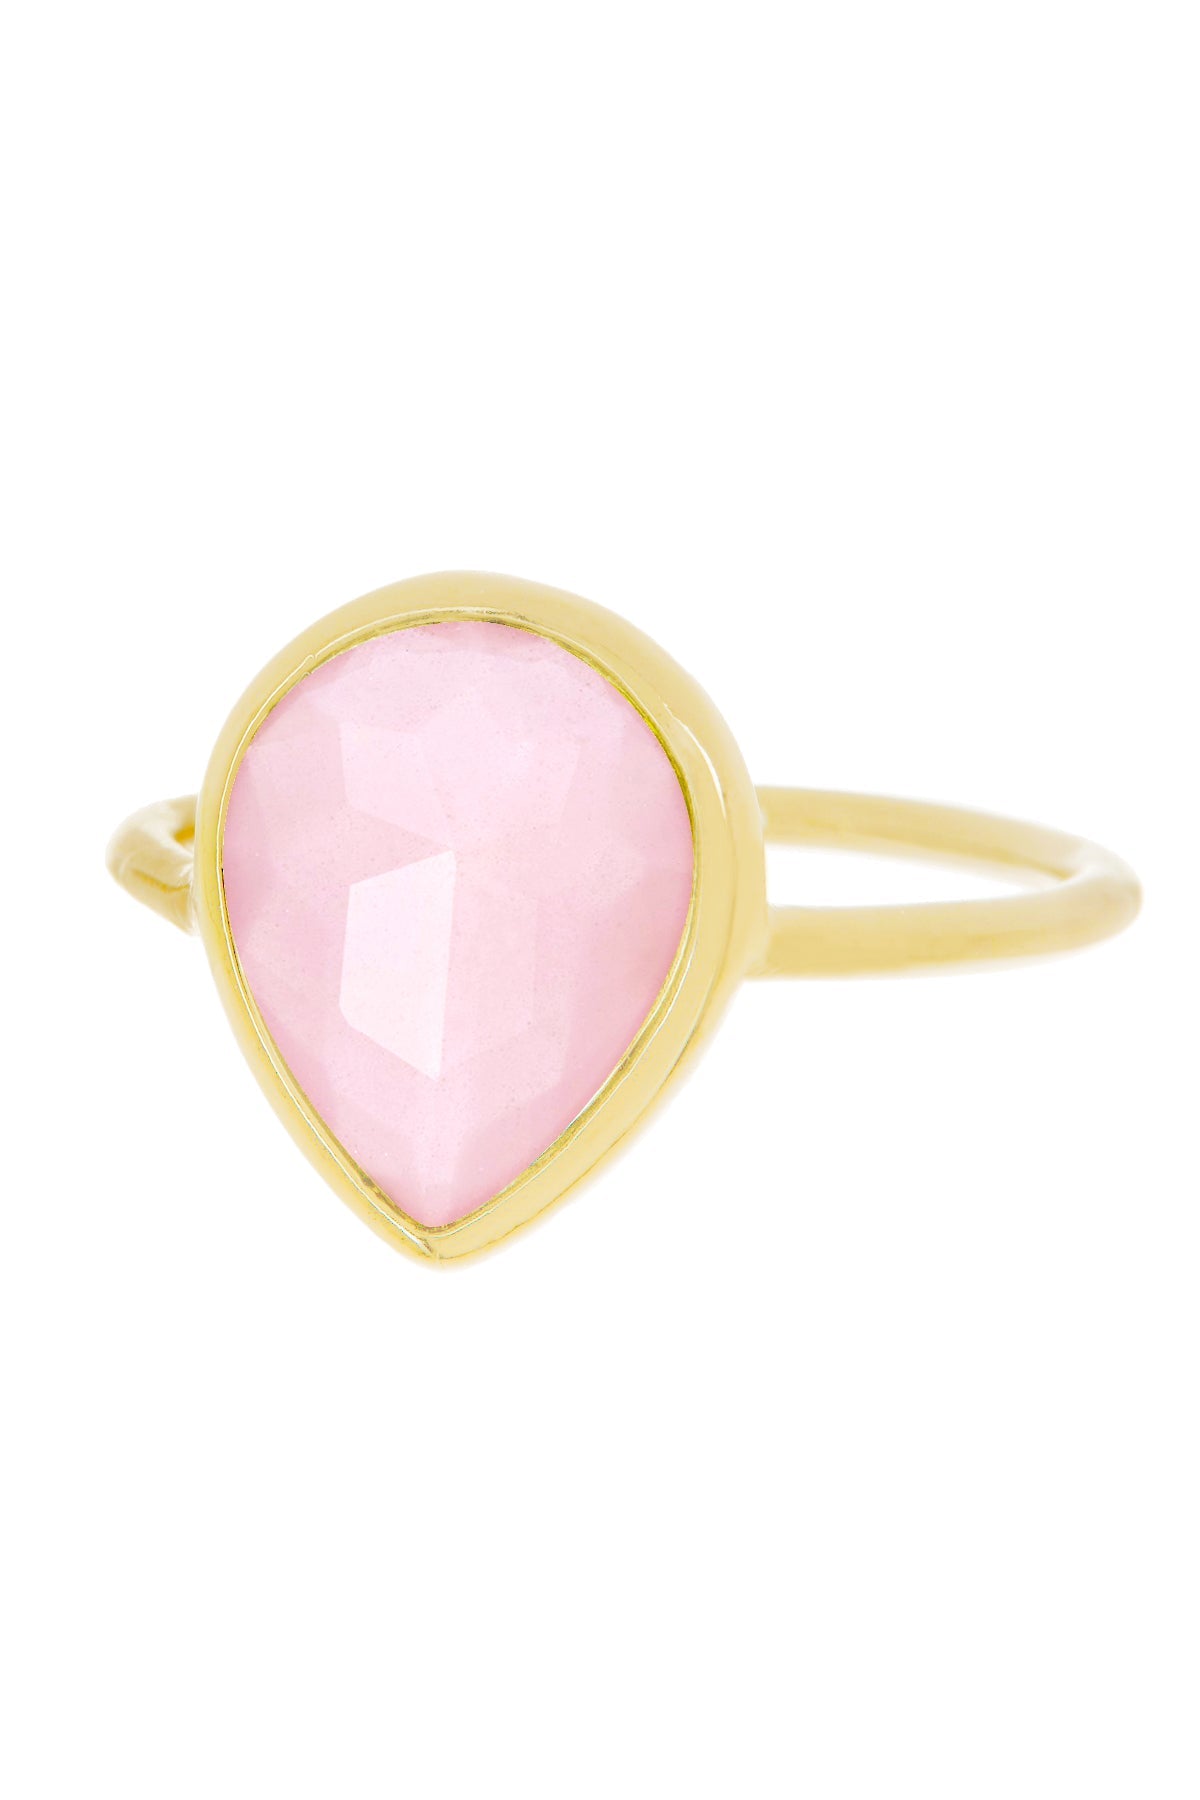 Rose Crystal Teardrop Ring In 14k - GF